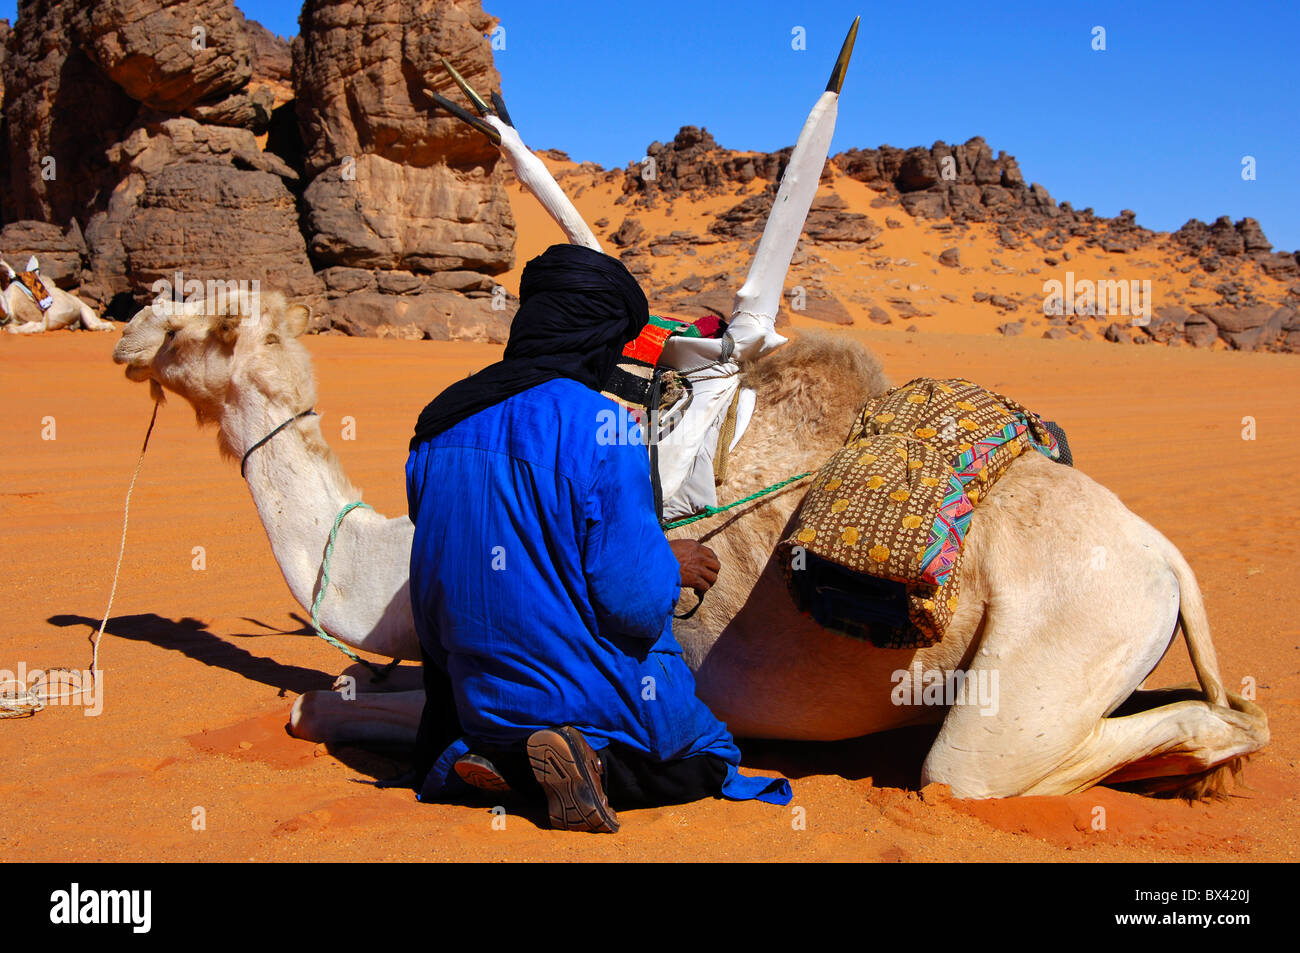 Les hommes touaregs de fixation de la selle sur le dos d'un dromadaire Méhari avant le parcours, désert du Sahara, la Libye Banque D'Images